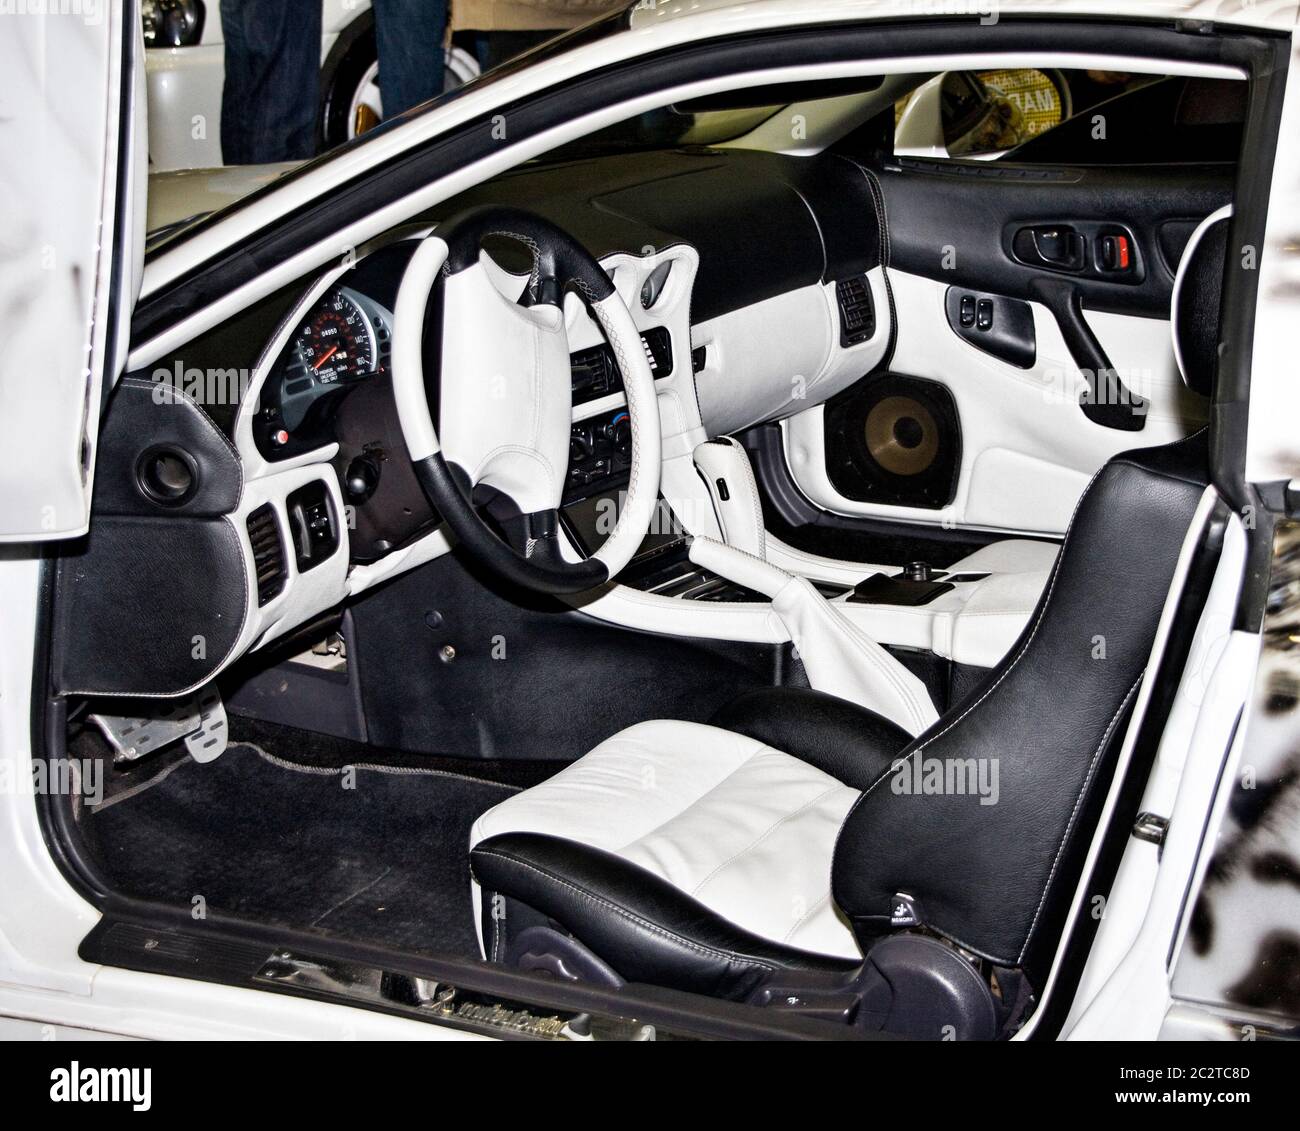 Auto Innenraum Luxus. Komfortablen modernen Salon. Reinigung und Auto-Service-Details  Stockfotografie - Alamy